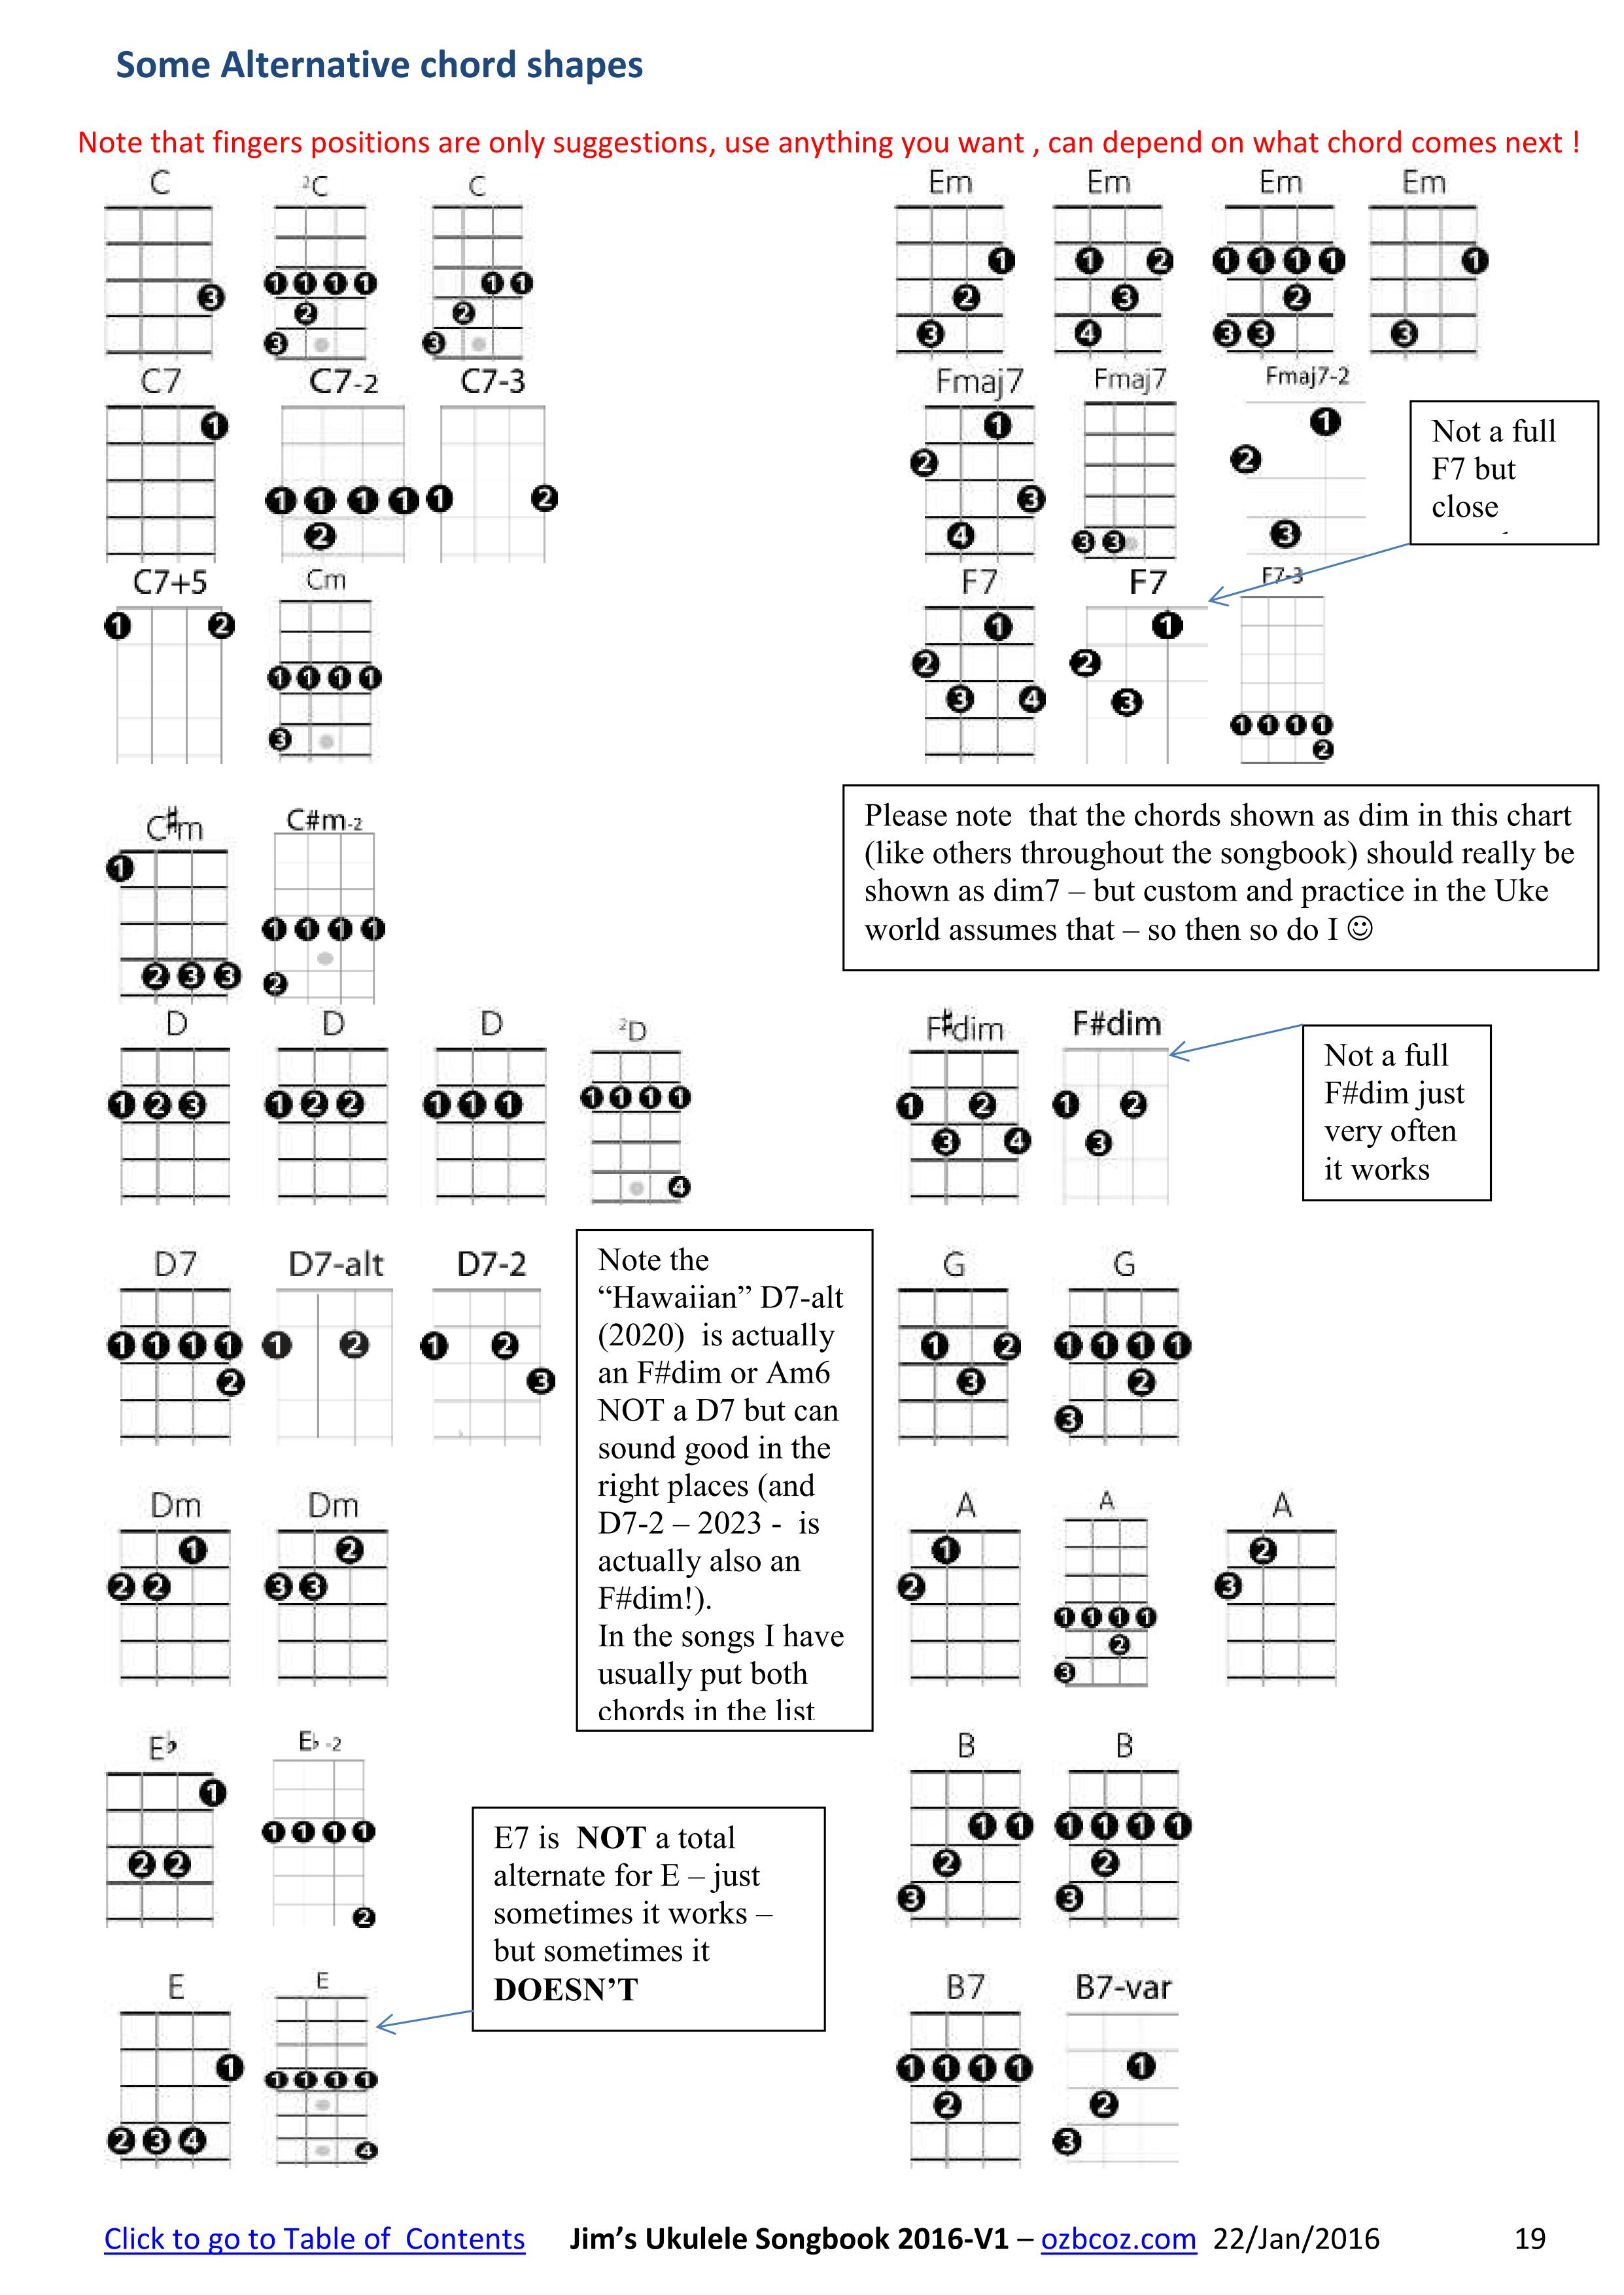 Ukulele Movable Chords Chart